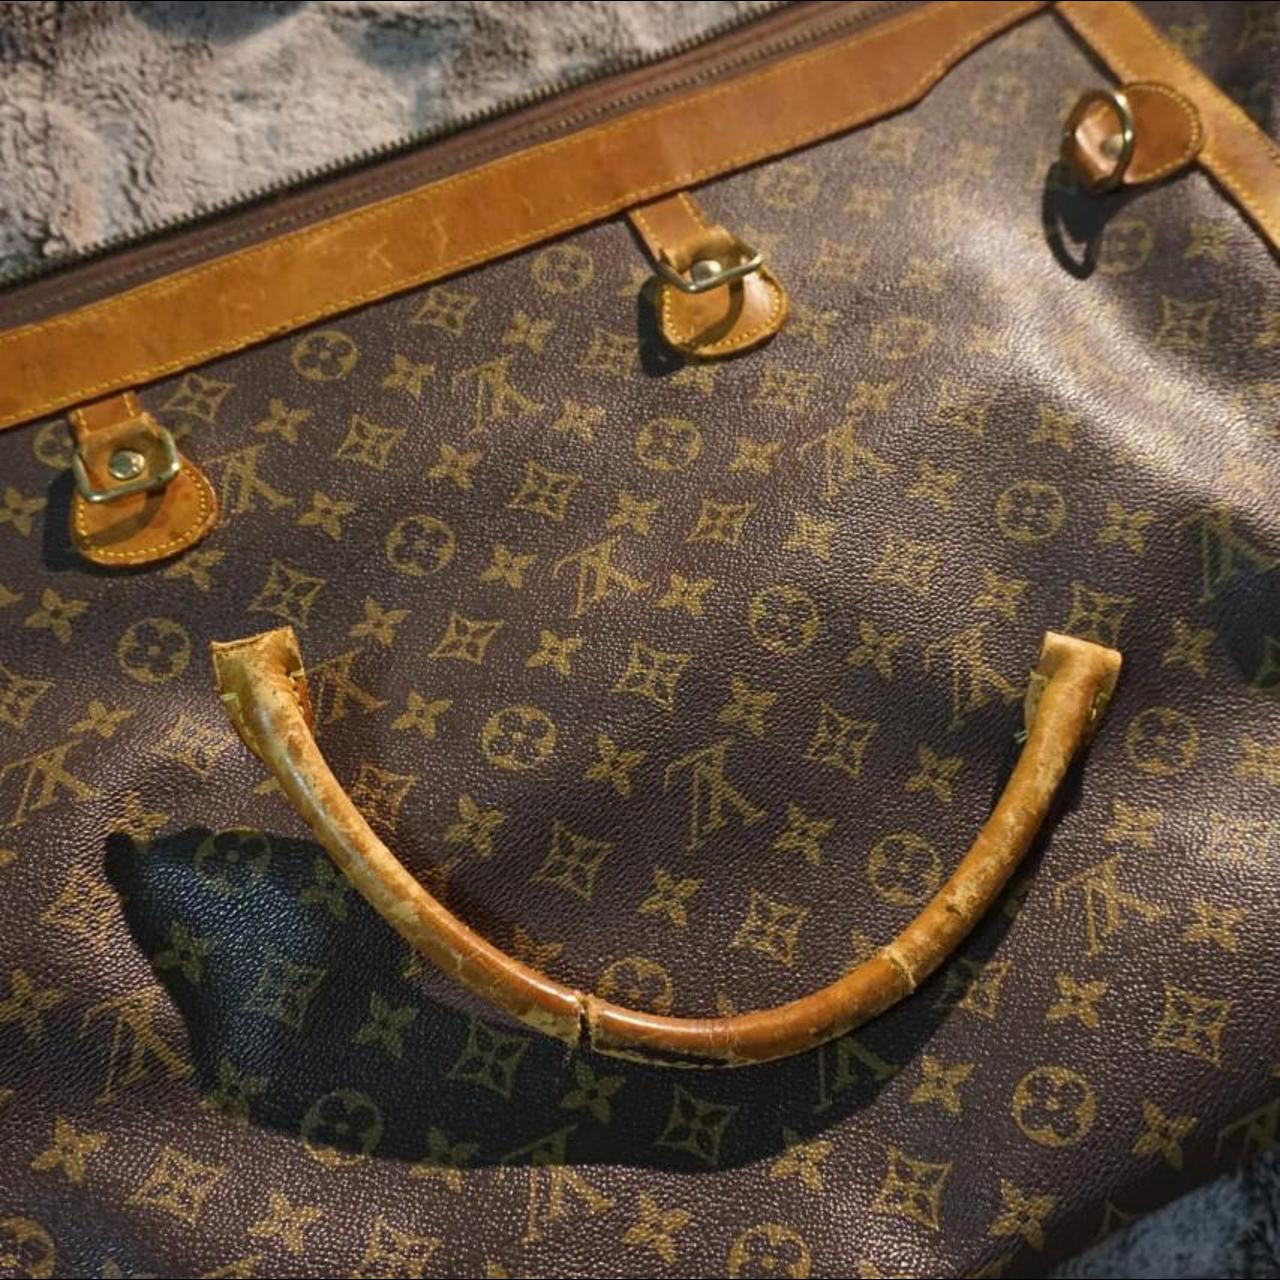 Louis Vuitton Bandouliere 55 Beautiful duffel bag - Depop